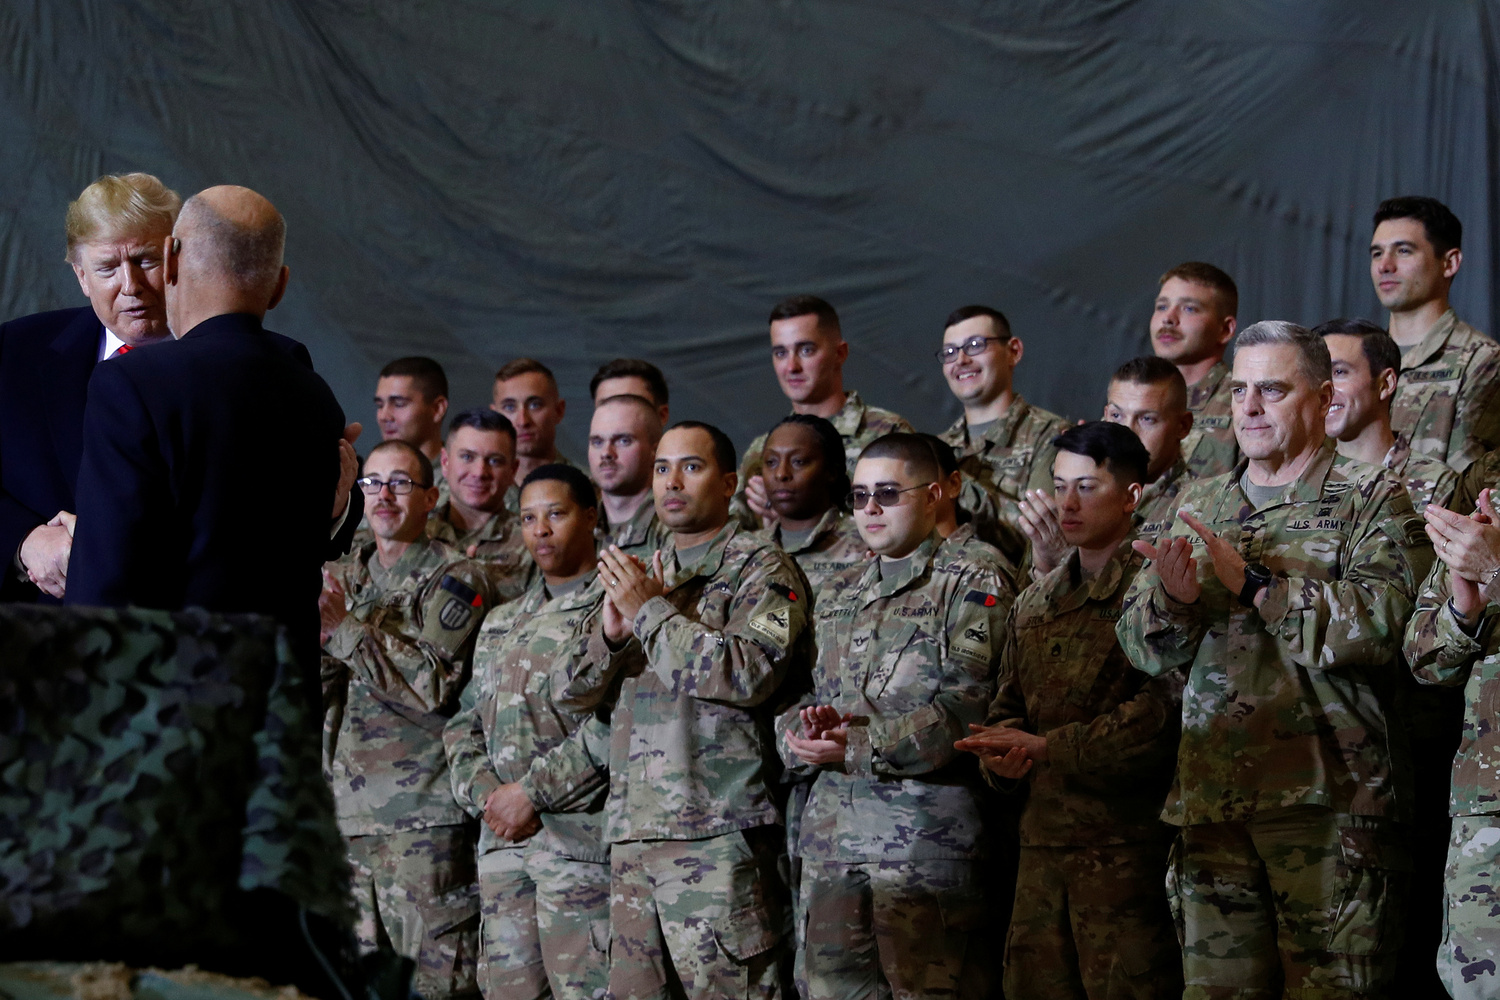 Mark Miley, Capo di stato maggiore militare degli Stati Uniti, guarda mentre il Presidente degli Stati Uniti Donald Trump stringe la mano al Presidente dell'Afghanistan Ashraf Ghani durante una visita a sorpresa alla base aerea di Bagram in Afghanistan, 28 novembre 2019. REUTERS/Tom Brenner